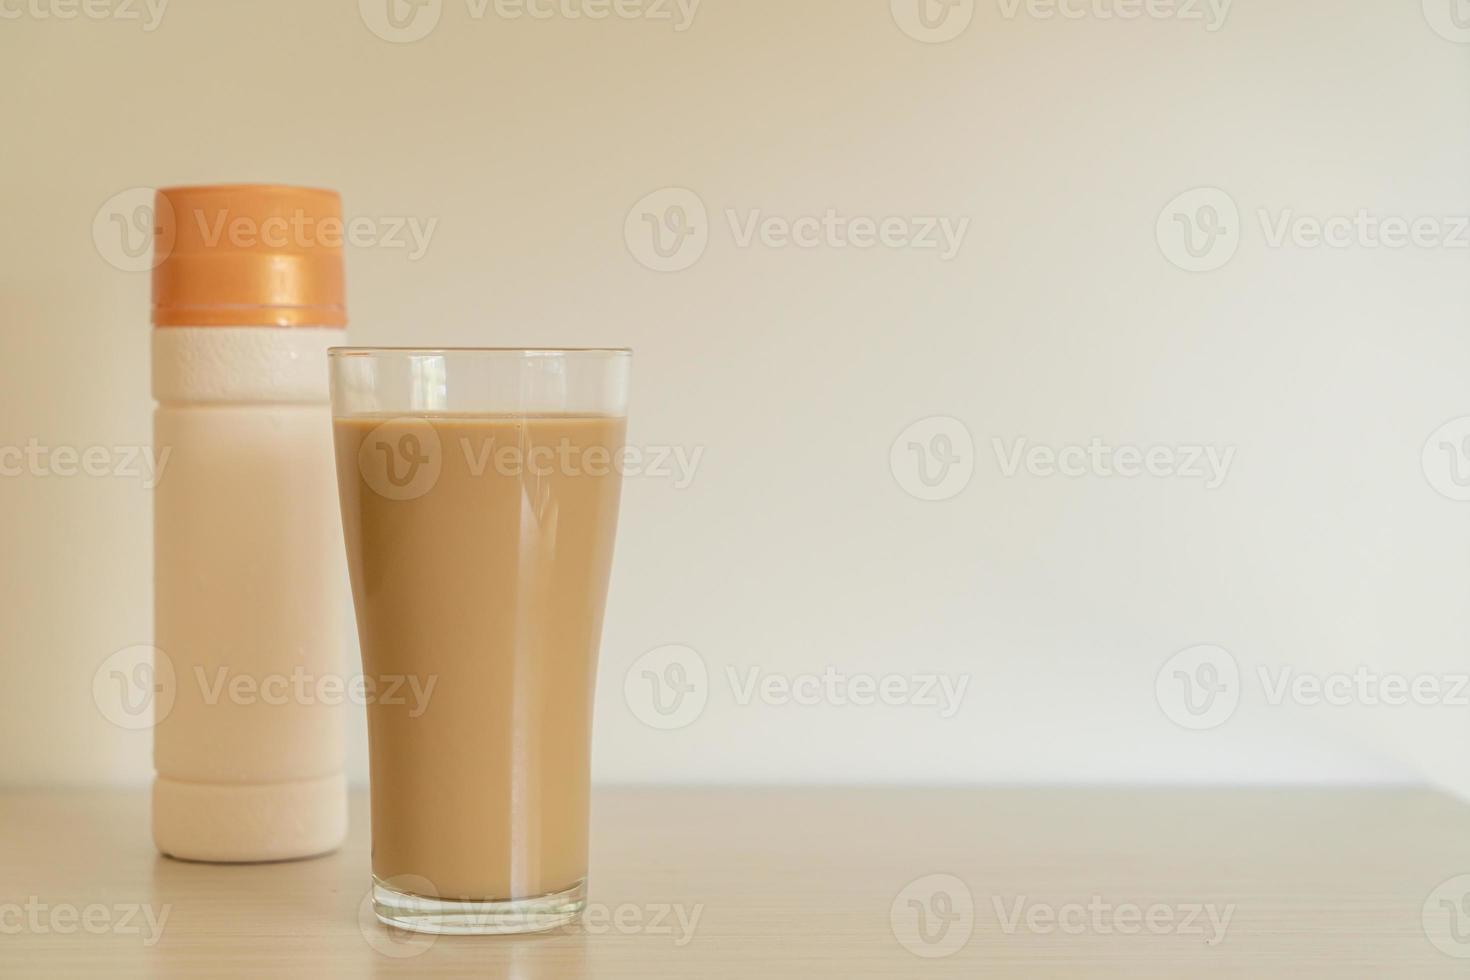 koffie latte glas met kant-en-klare koffieflessen foto